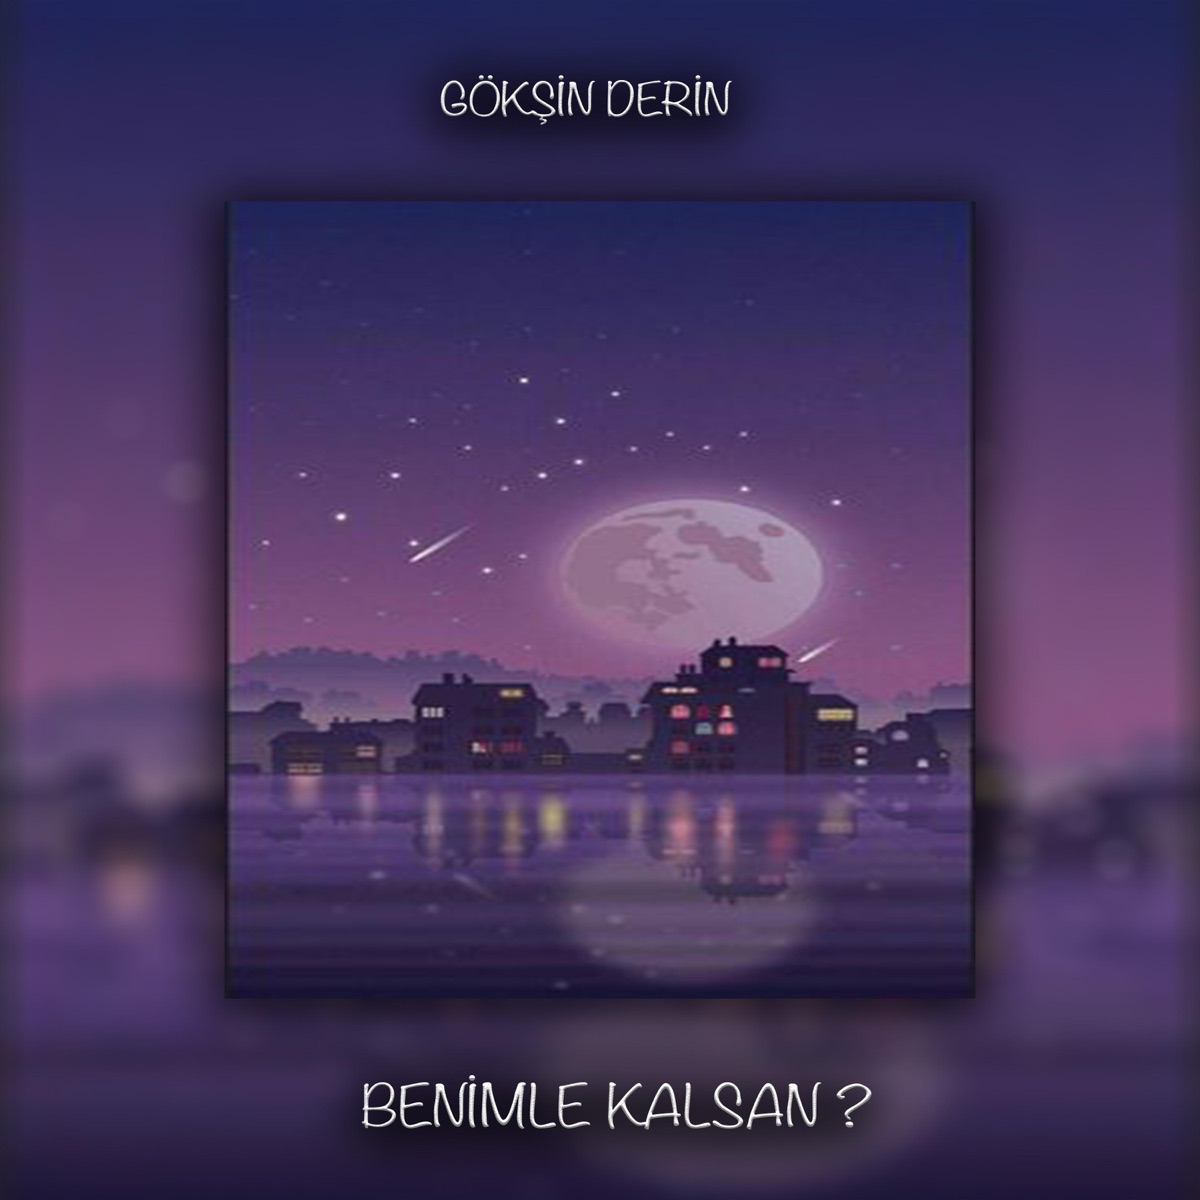 Benimle Kalsan? - Single - Album by Gökşin Derin - Apple Music